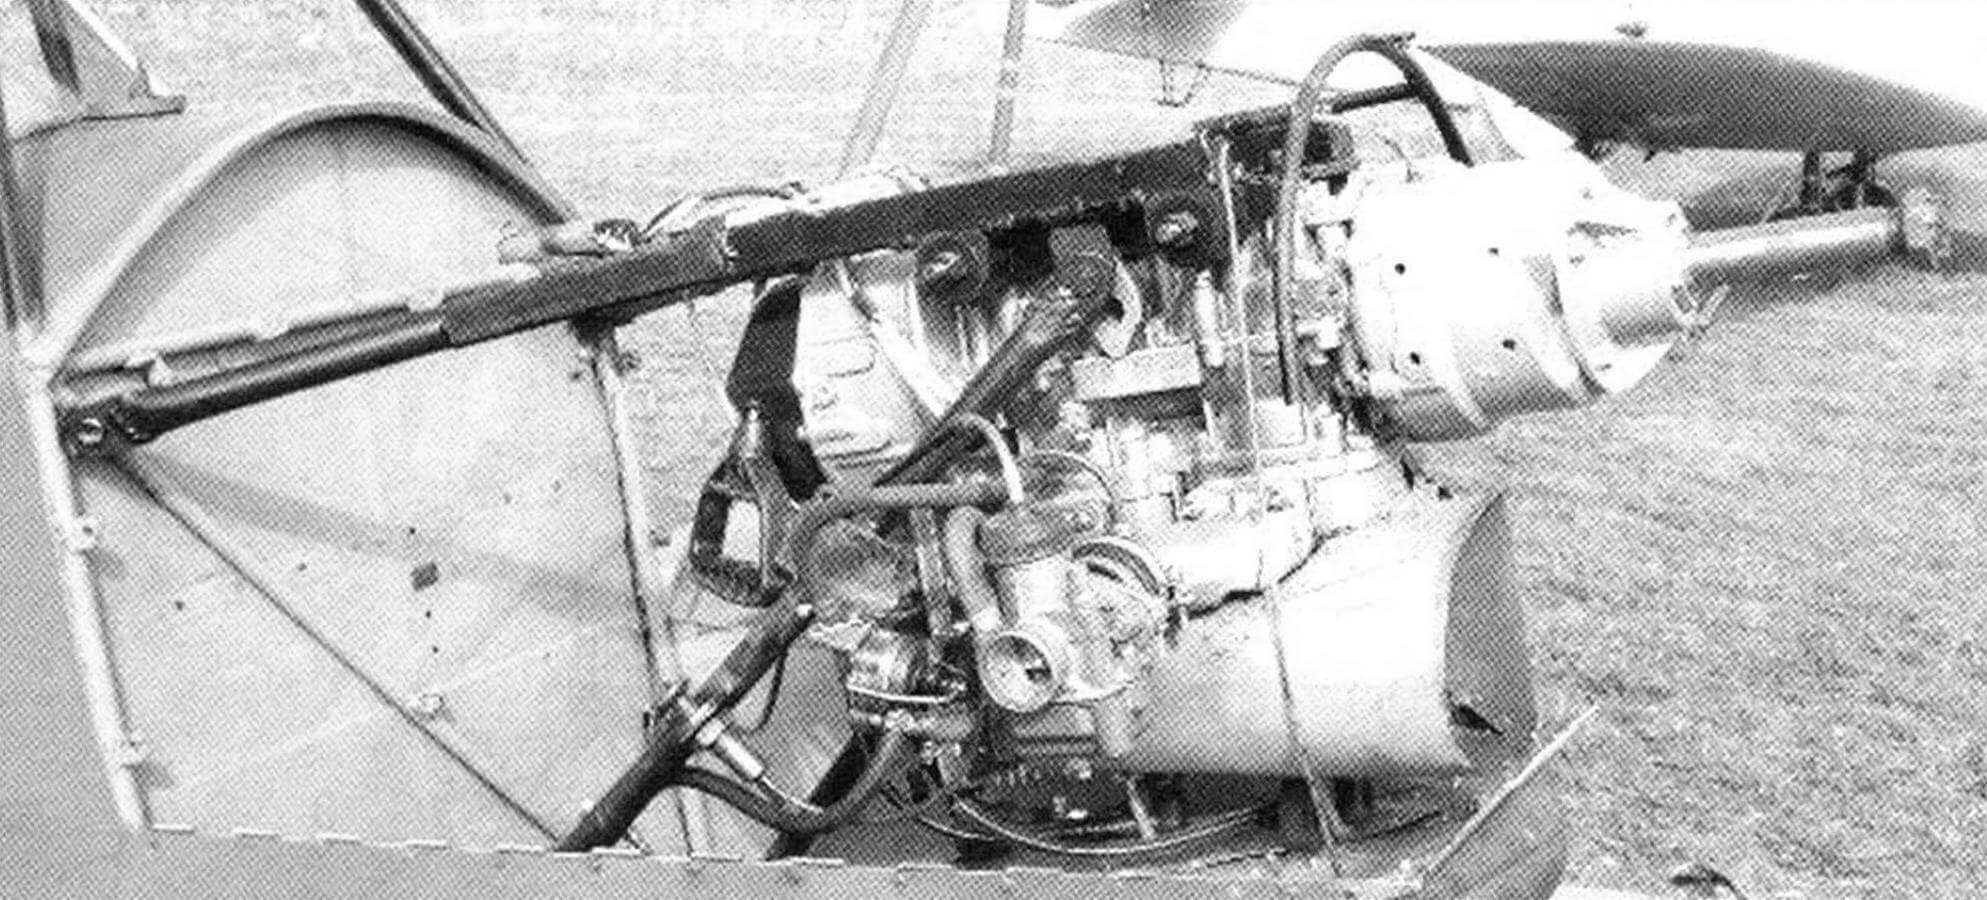 Двигатель УМ3 440-02 от снегохода «Рысь» хорошо вписался в контуры фюзеляжа и обеспечил самолёту неплохие лётные данные